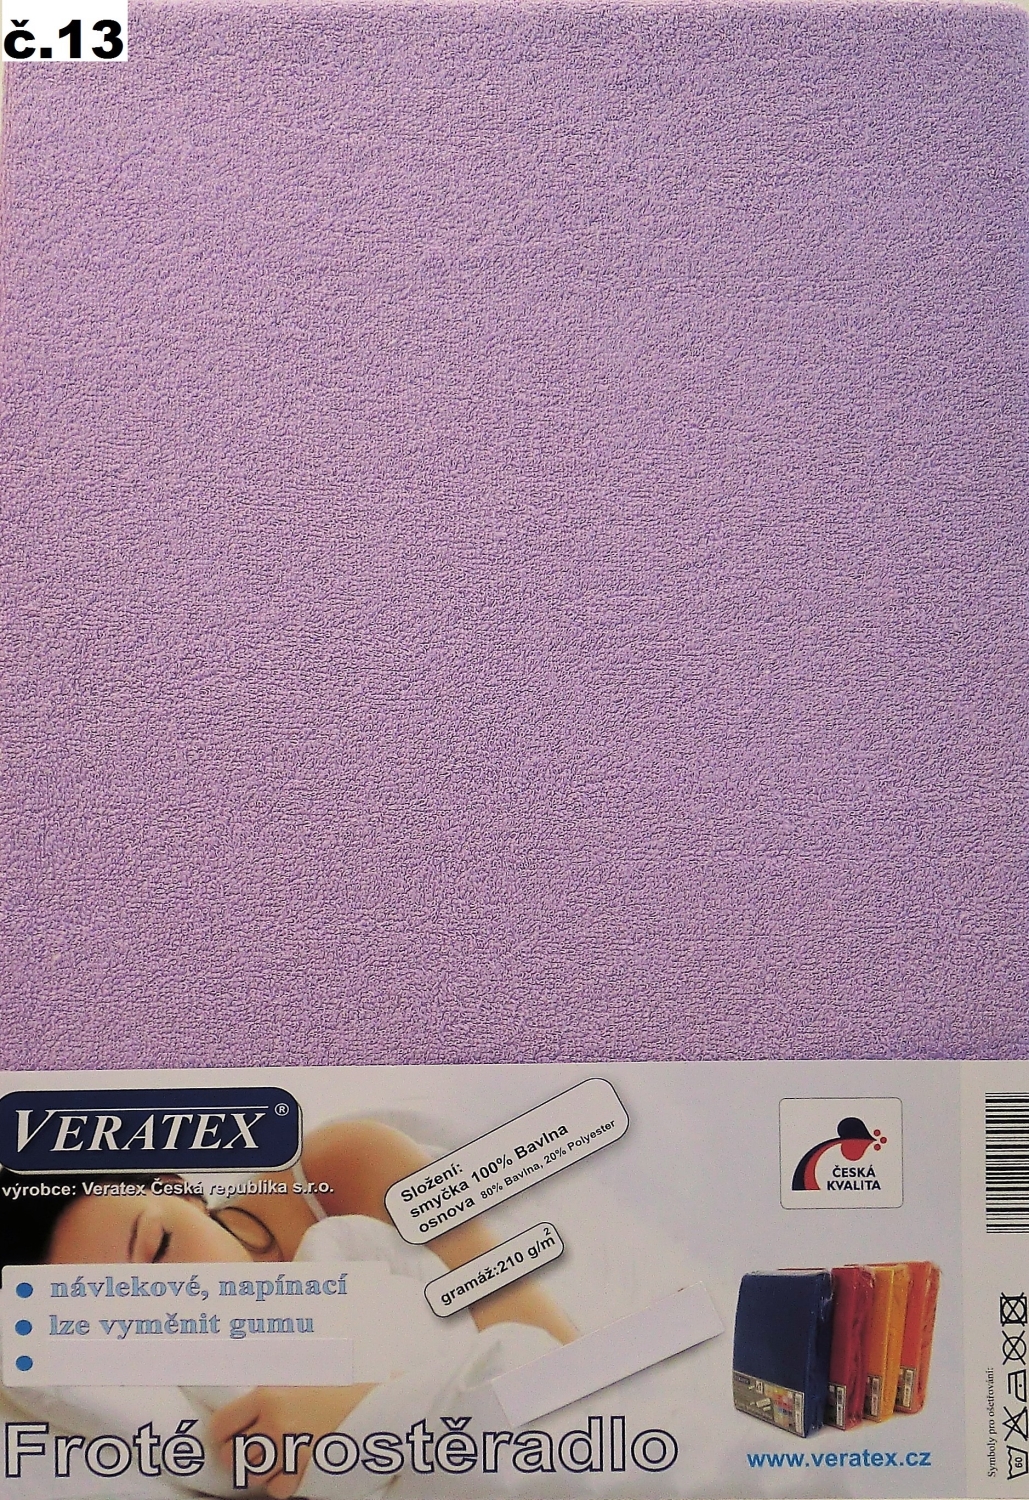 Veratex Froté prostěradlo jednolůžko 90x200/25cm (č.13-fialkové)